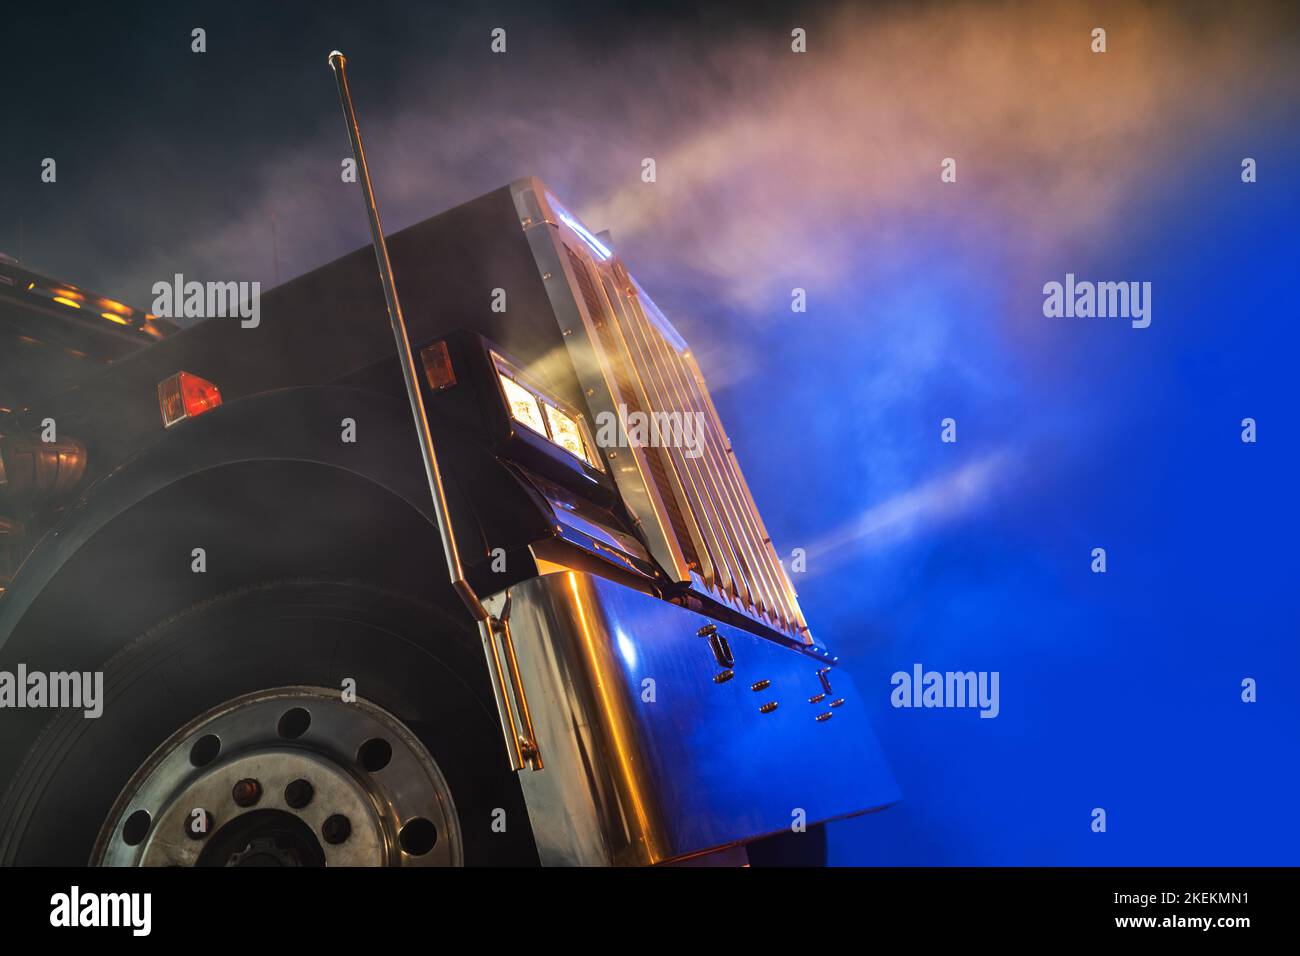 Condiciones de conducción de niebla densa en camiones durante las horas nocturnas. Clima peligroso. Concepto de transporte terrestre. Foto de stock